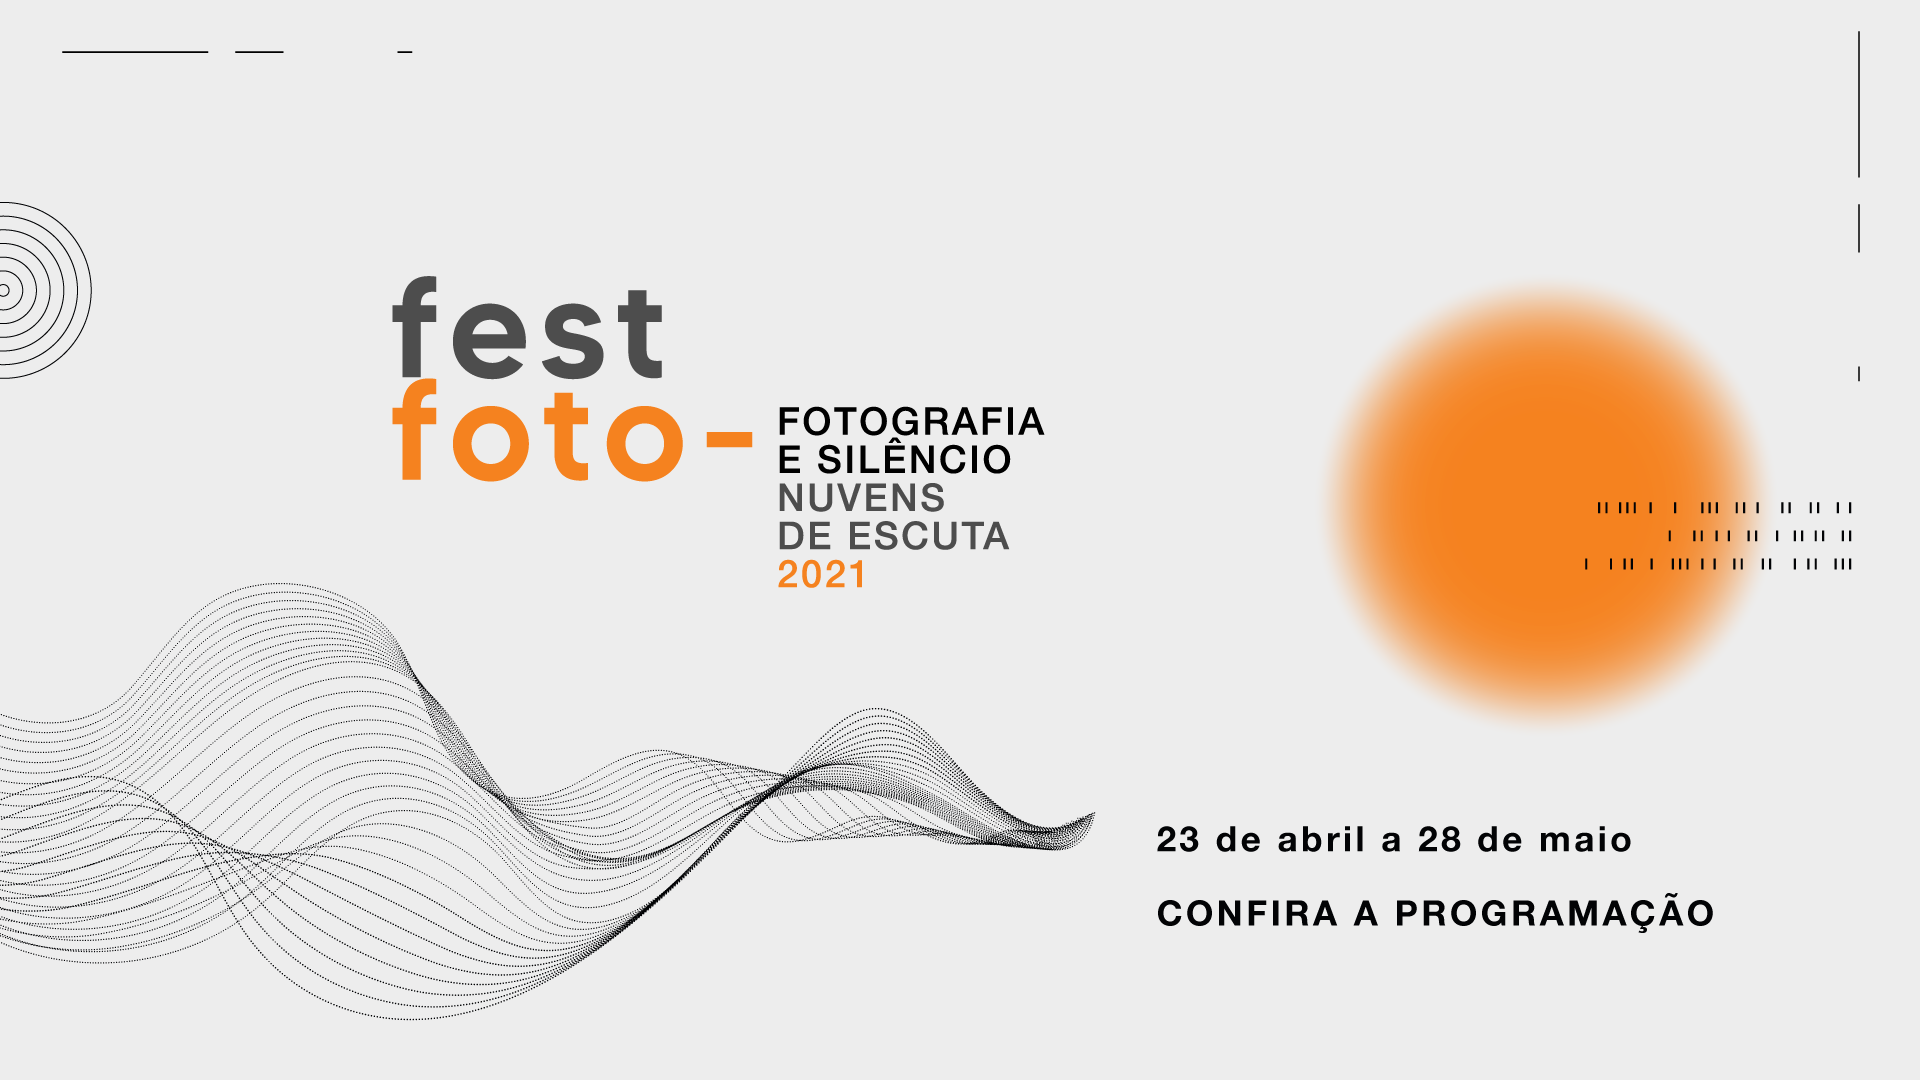 Veja a Programação do FestFoto 2021